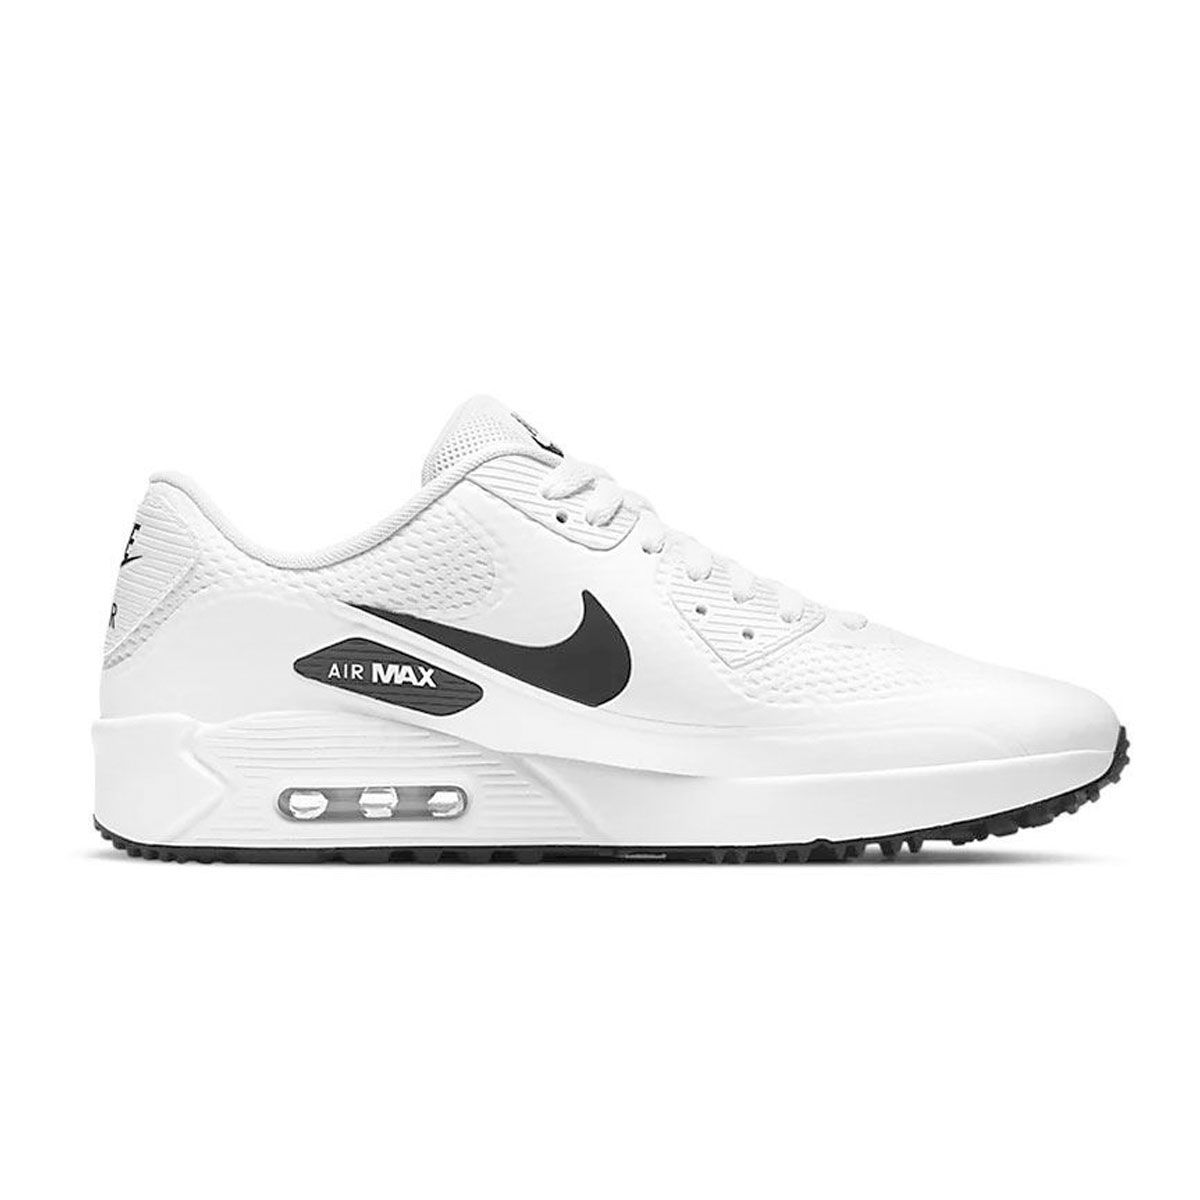 air max golf shoes white